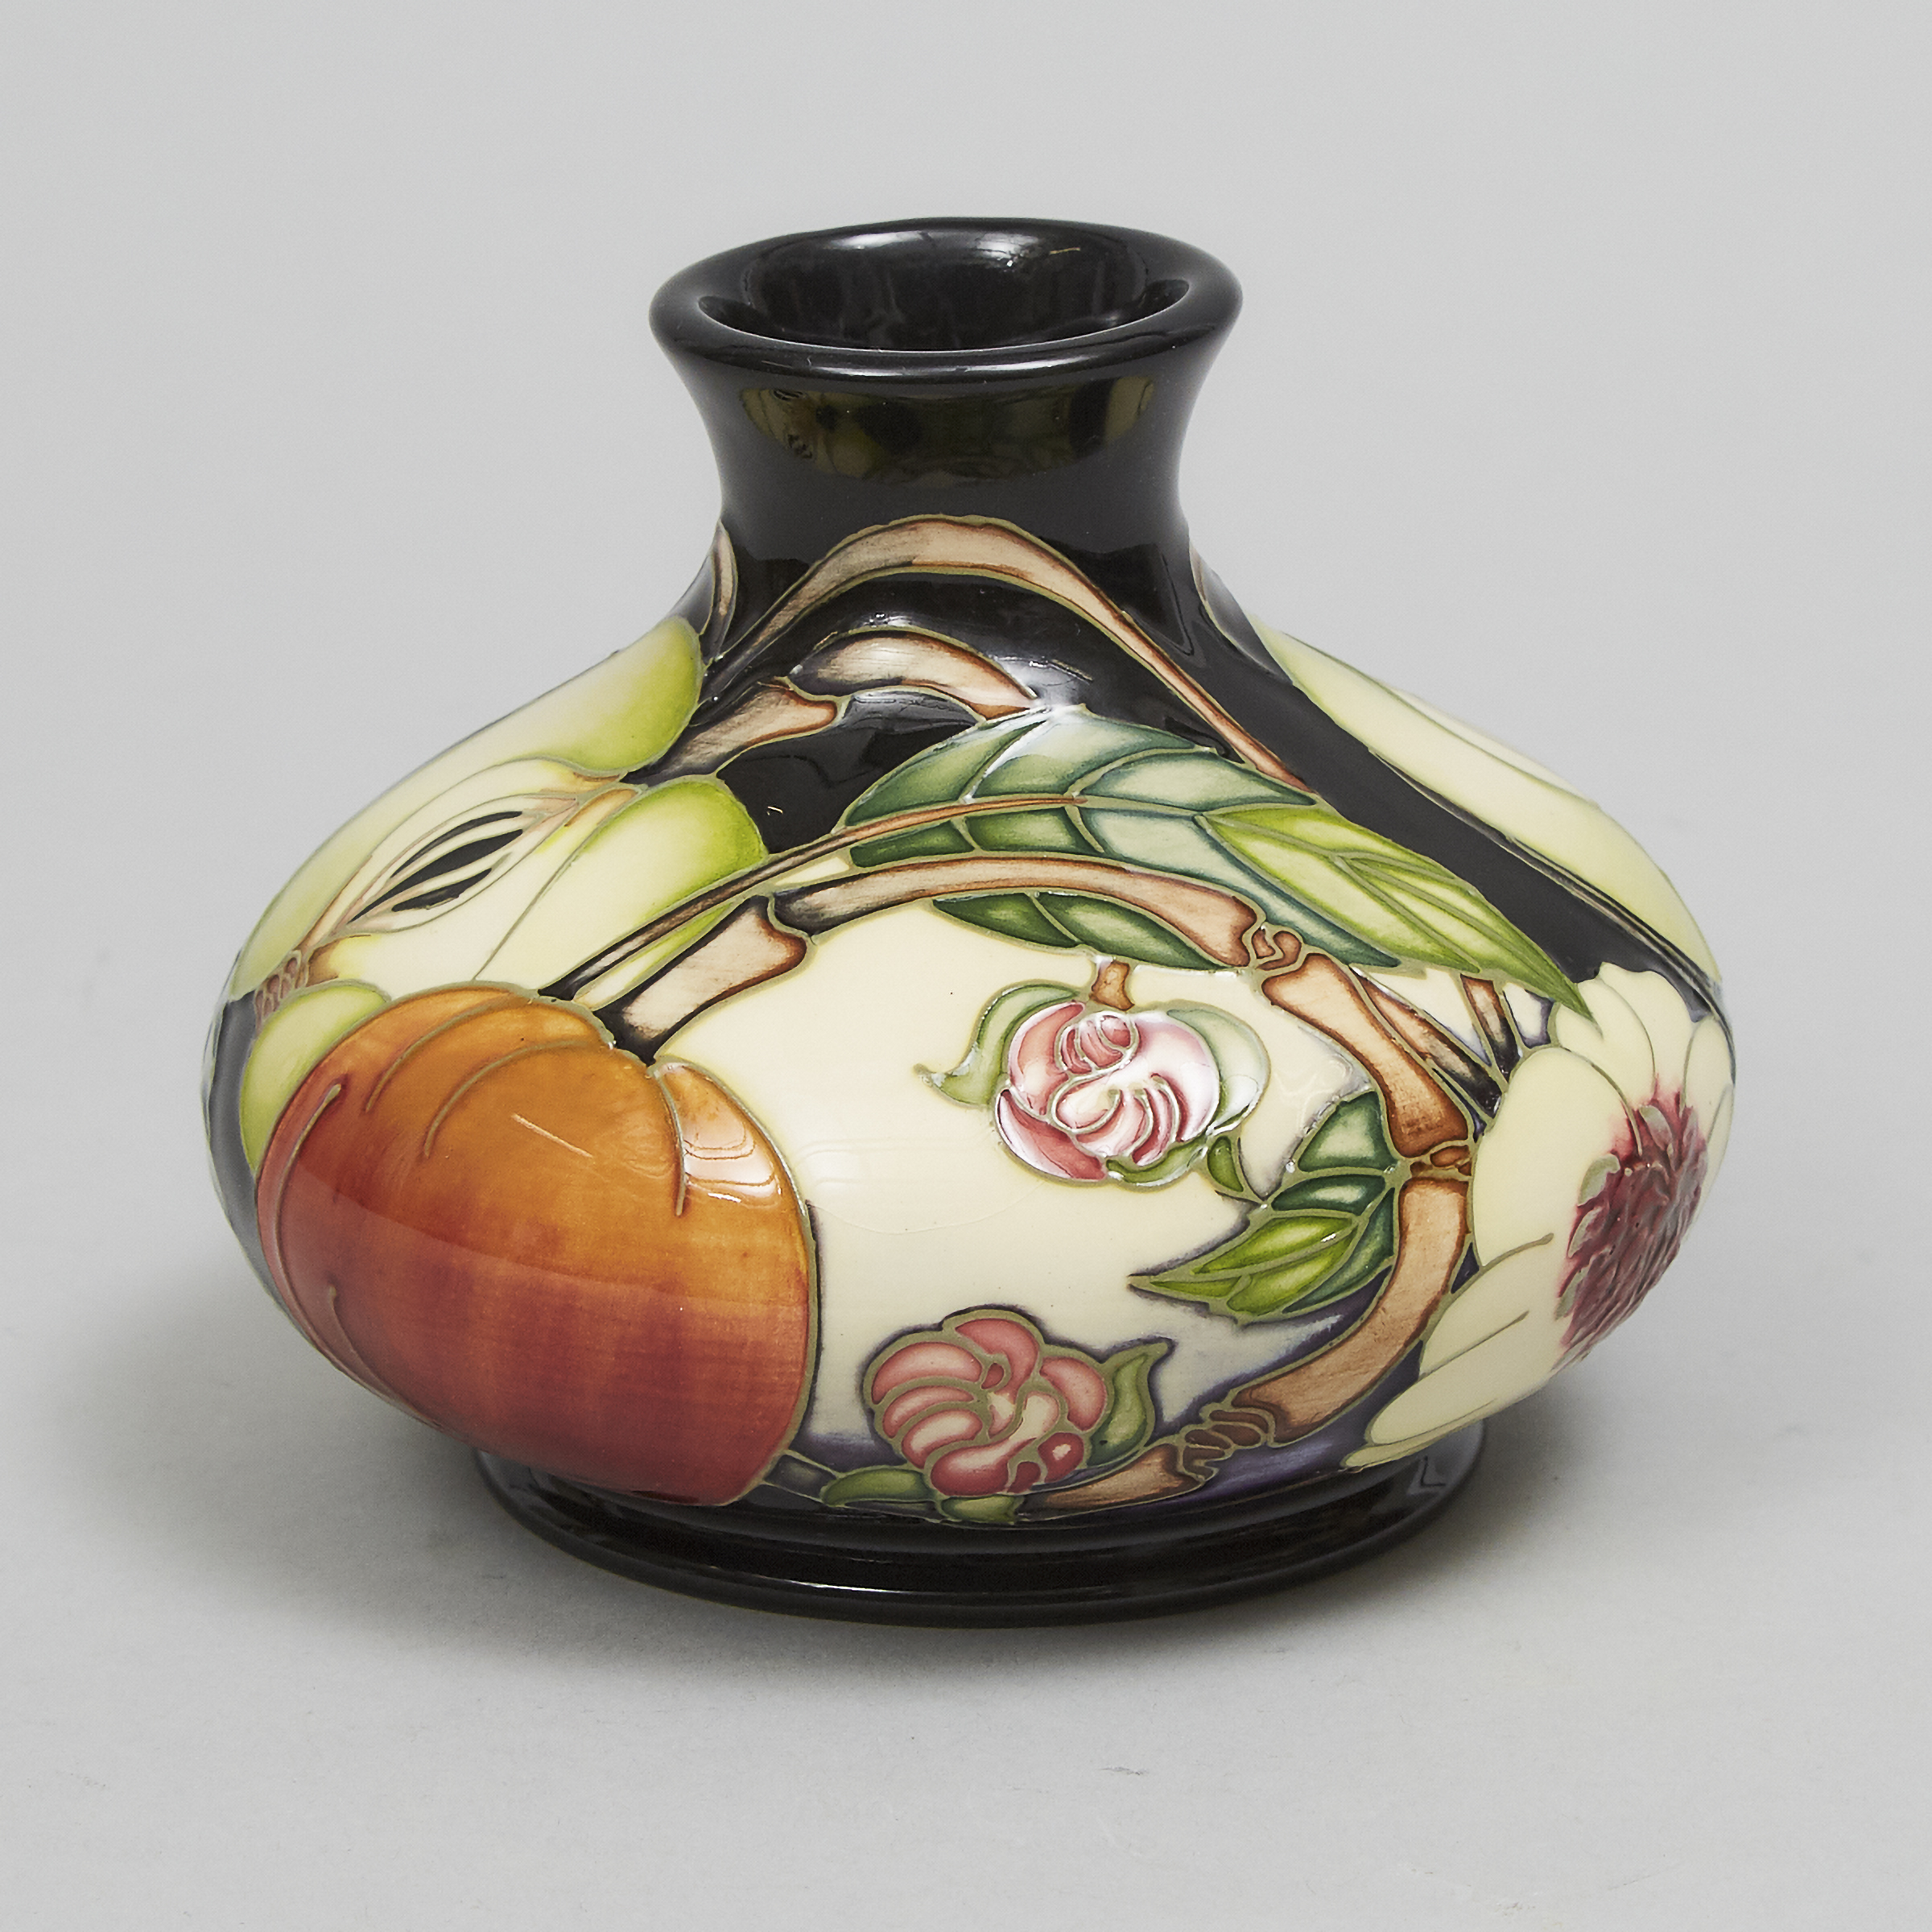 Moorcroft Dundela Orchard Vase, for Rob McIntosh, 2004